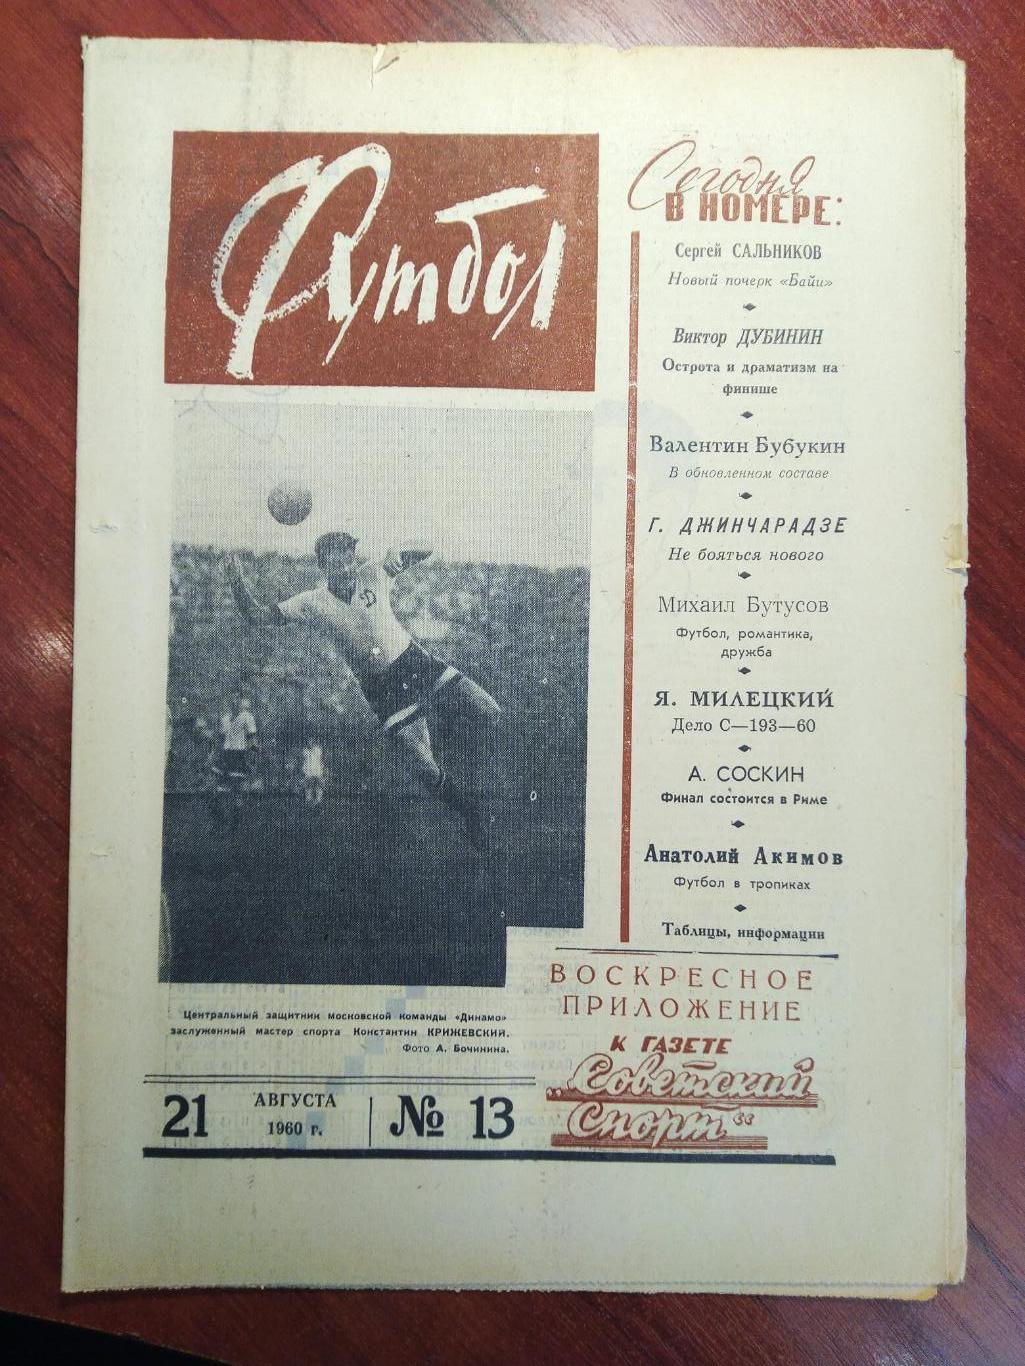 Еженедельник Футбол №13 от 11 августа 1960.Первый год выпуска!